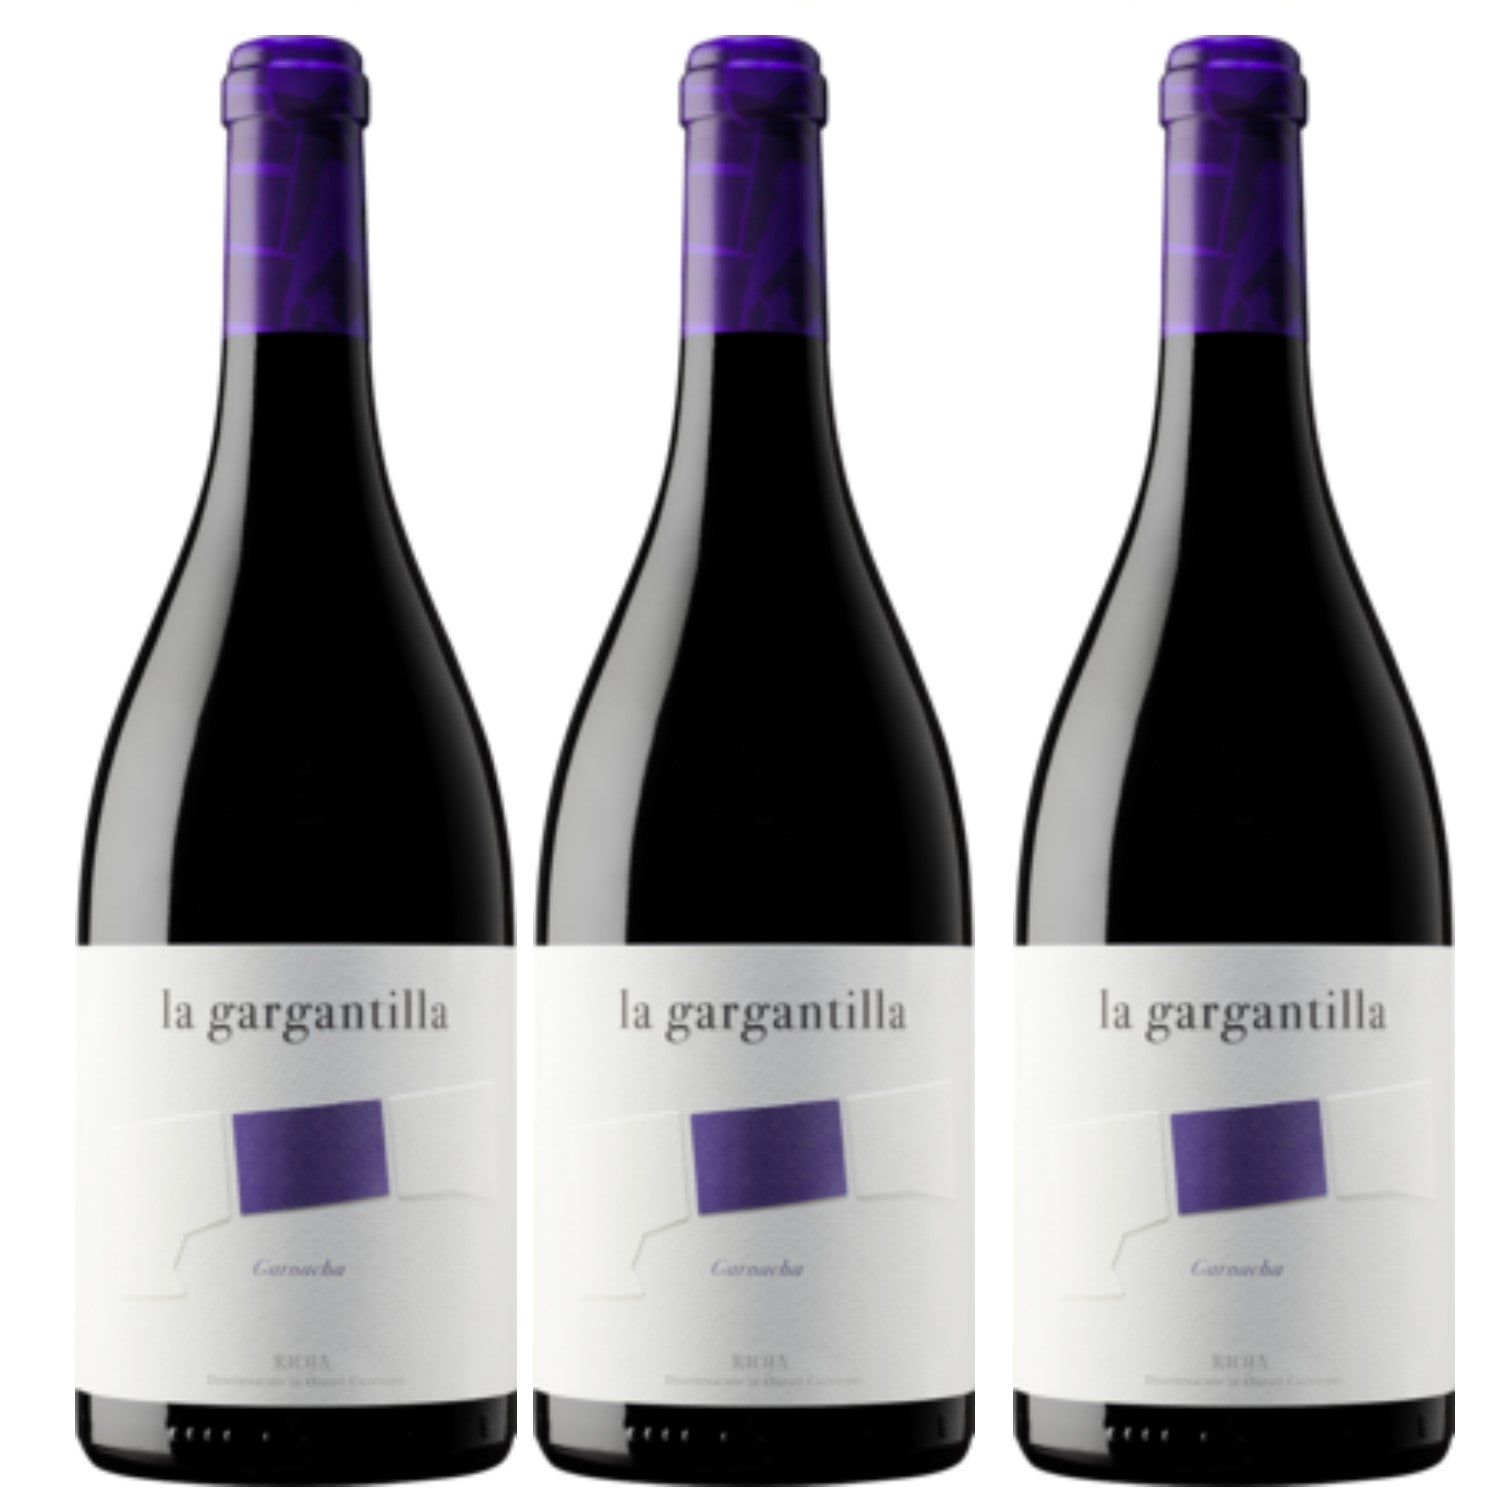 La Gargantilla Garnacha Single State Vineyard Rioja DOCa veganer Wein Spanien (3 x 0.75l) - Versanel -